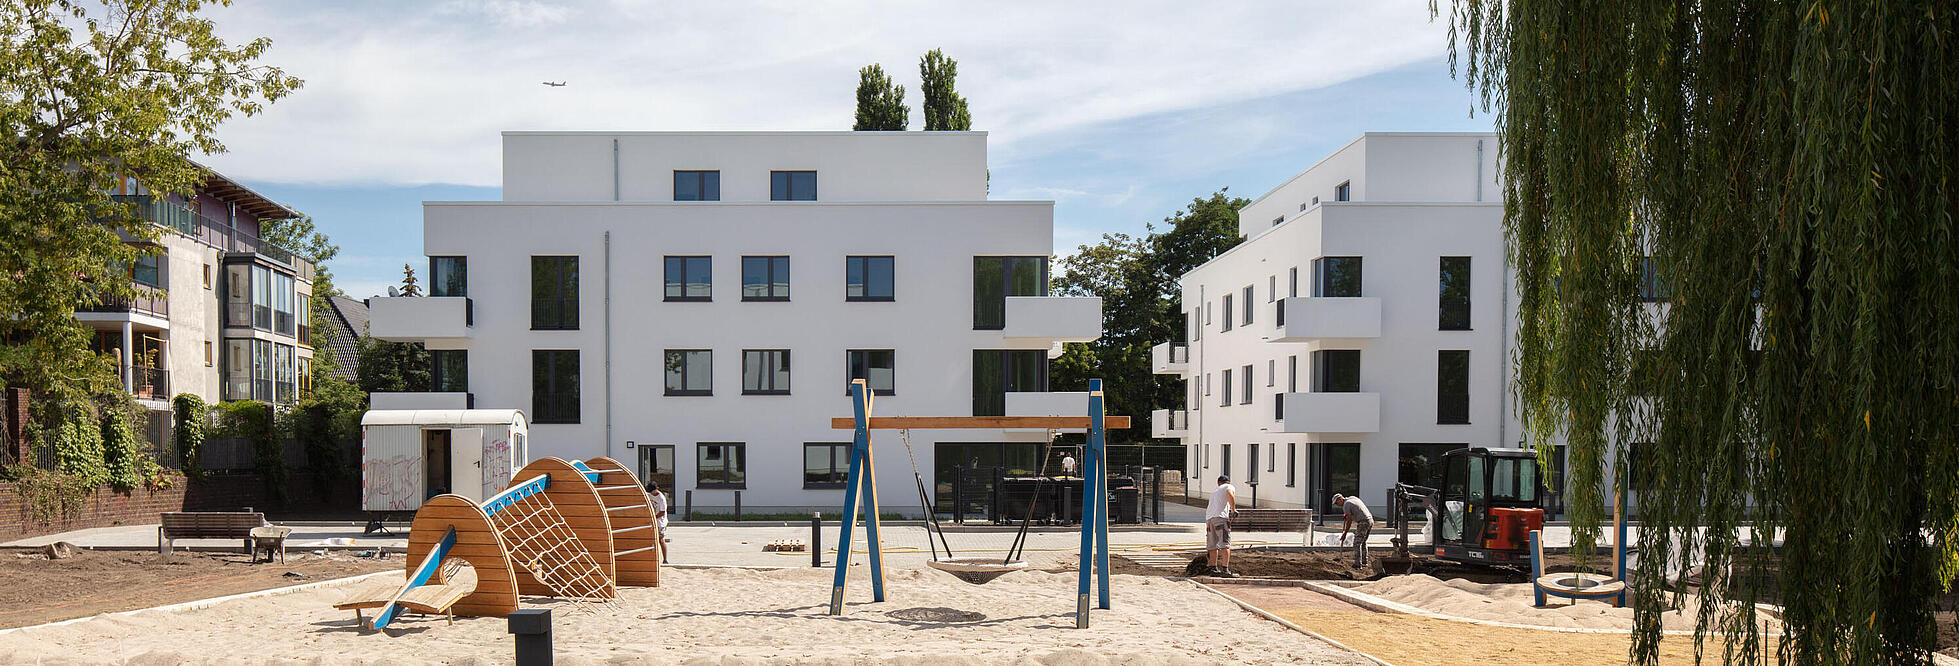 Weitwinkelaufnahme außen: Im Vordergrund ein Spielplatz mit Wipptieren, im Hintergrund in der Bildmitte zwei neu gebaute Häuser in der Abajstraße / Kastanienallee.